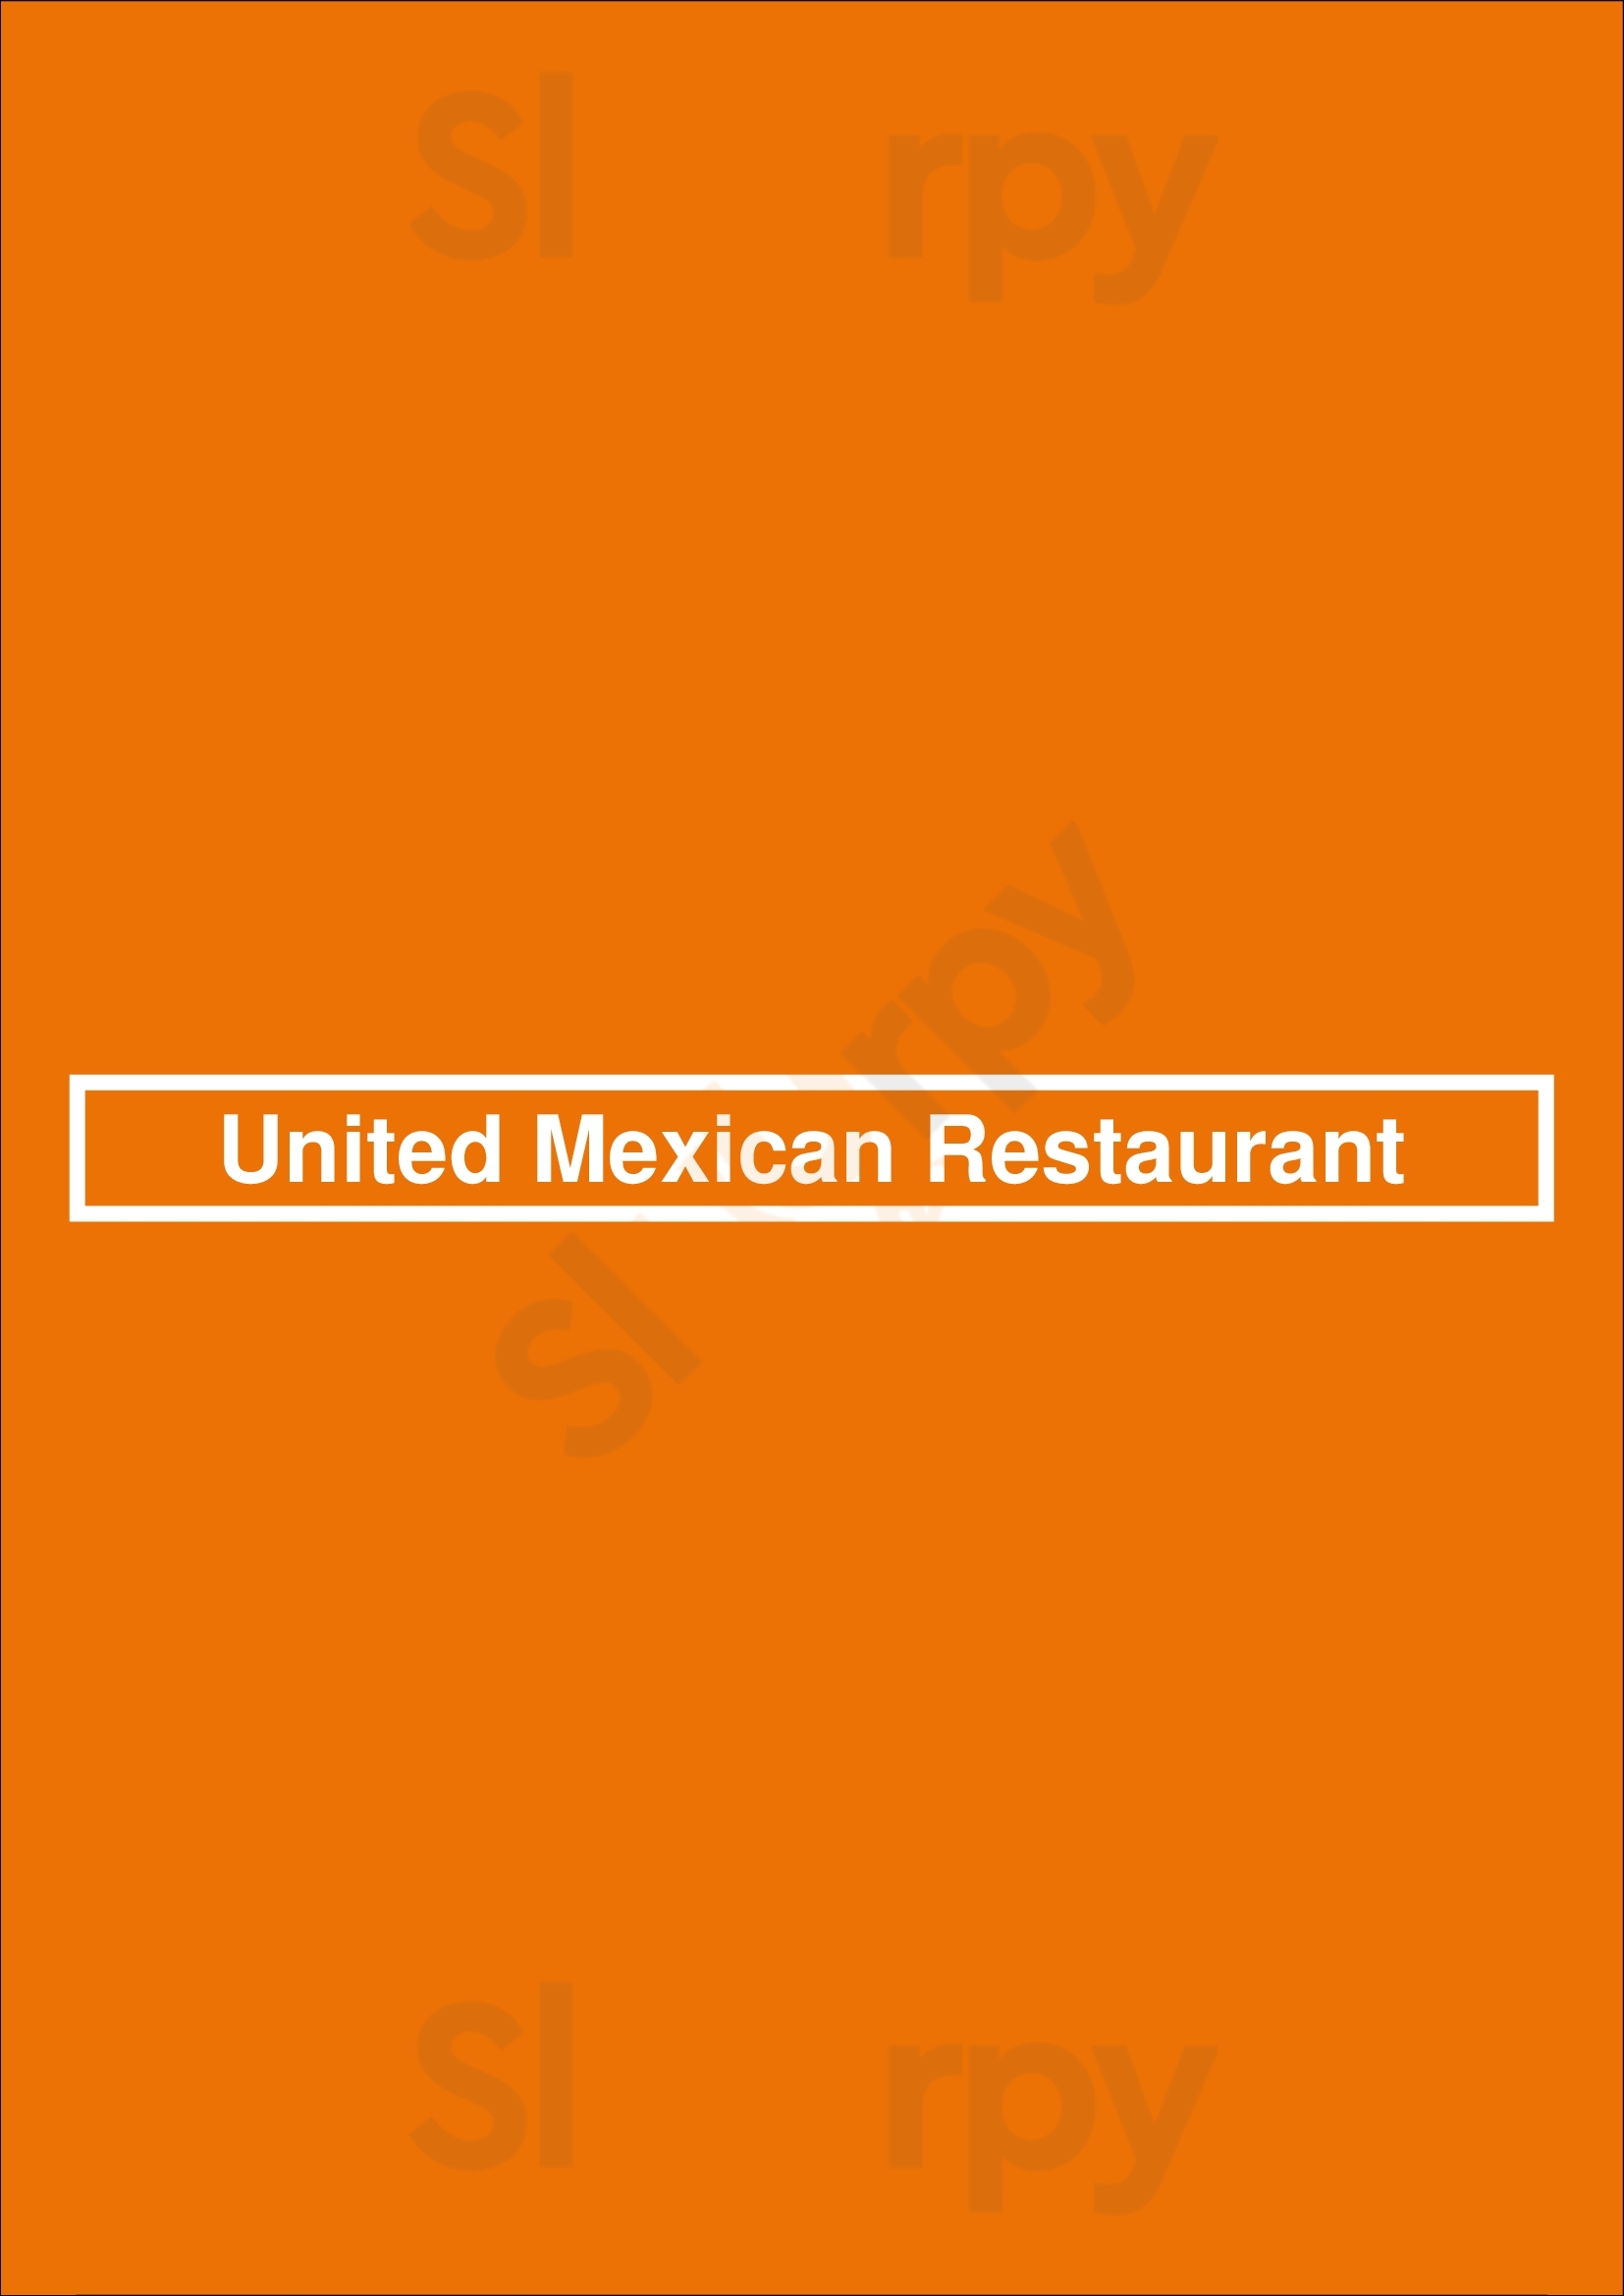 United Mexican Restaurant Hayward Menu - 1